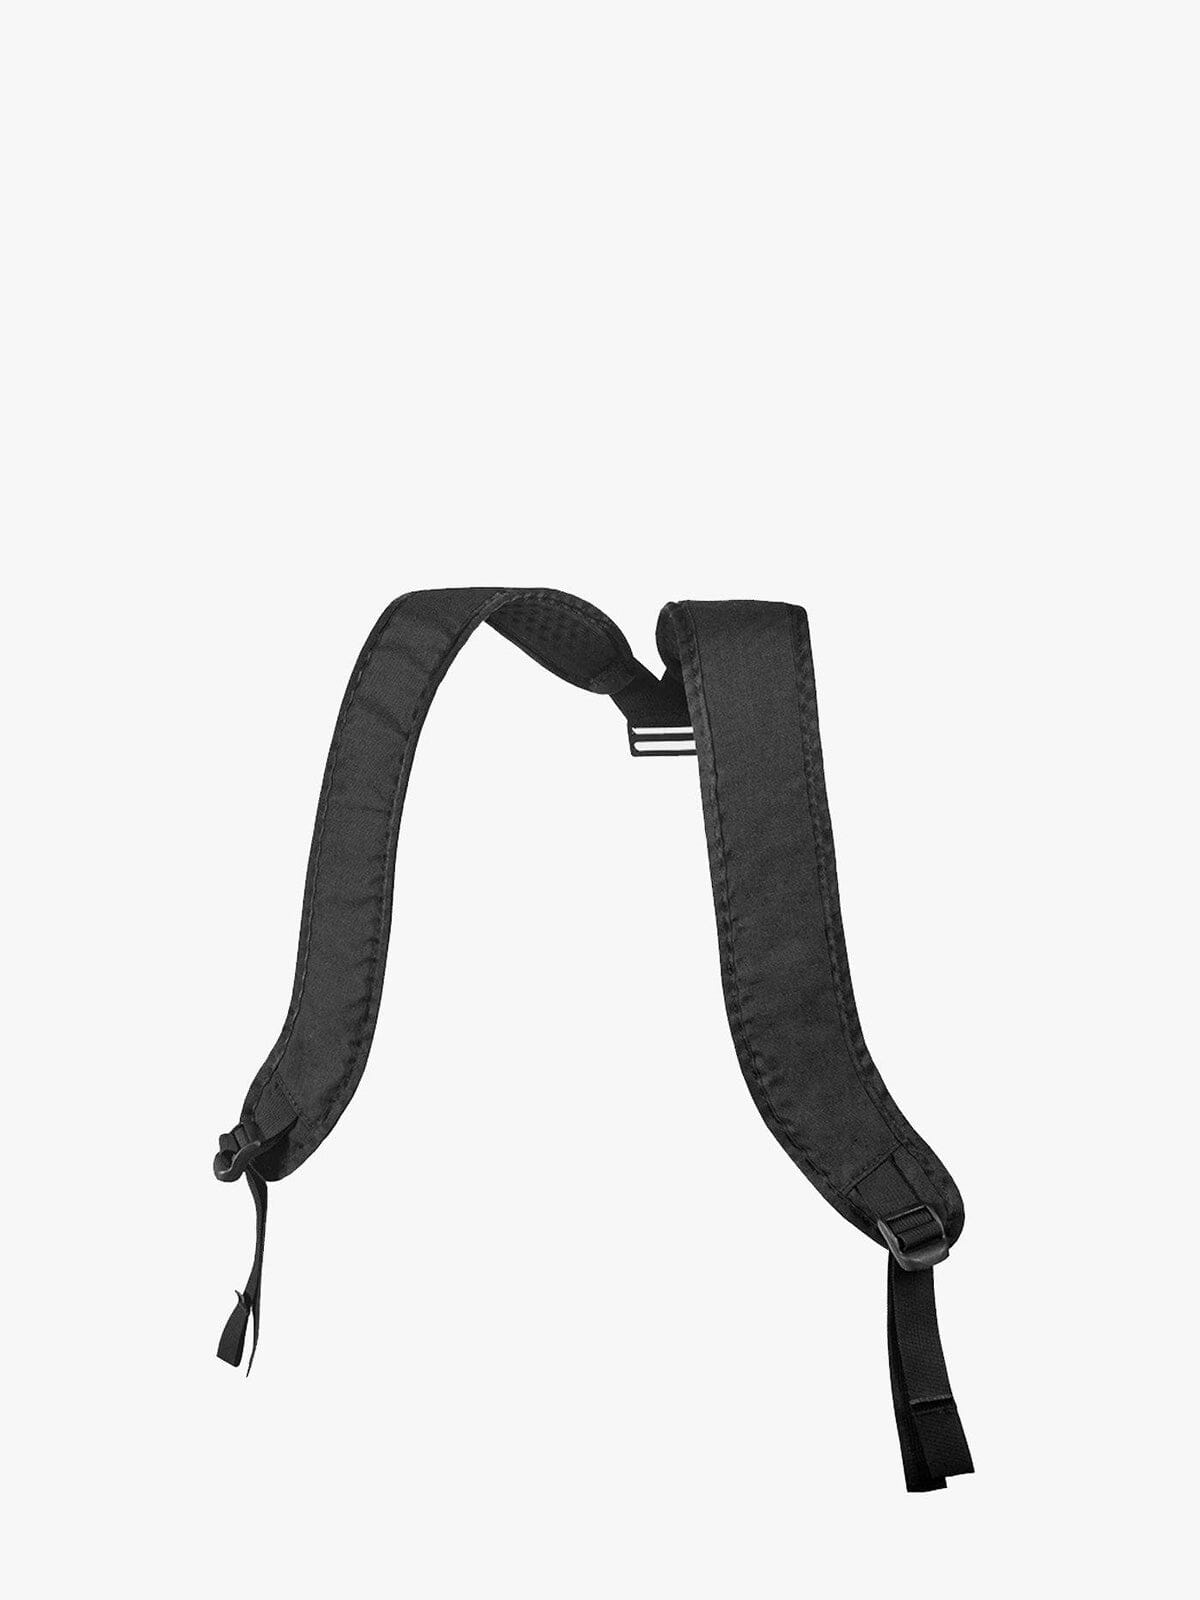 Transit : Duffle Backpack Harness by Mission Workshop - Säänkestävät laukut ja tekniset vaatteet - San Francisco & Los Angeles - Rakennettu kestämään - ikuisesti taattu